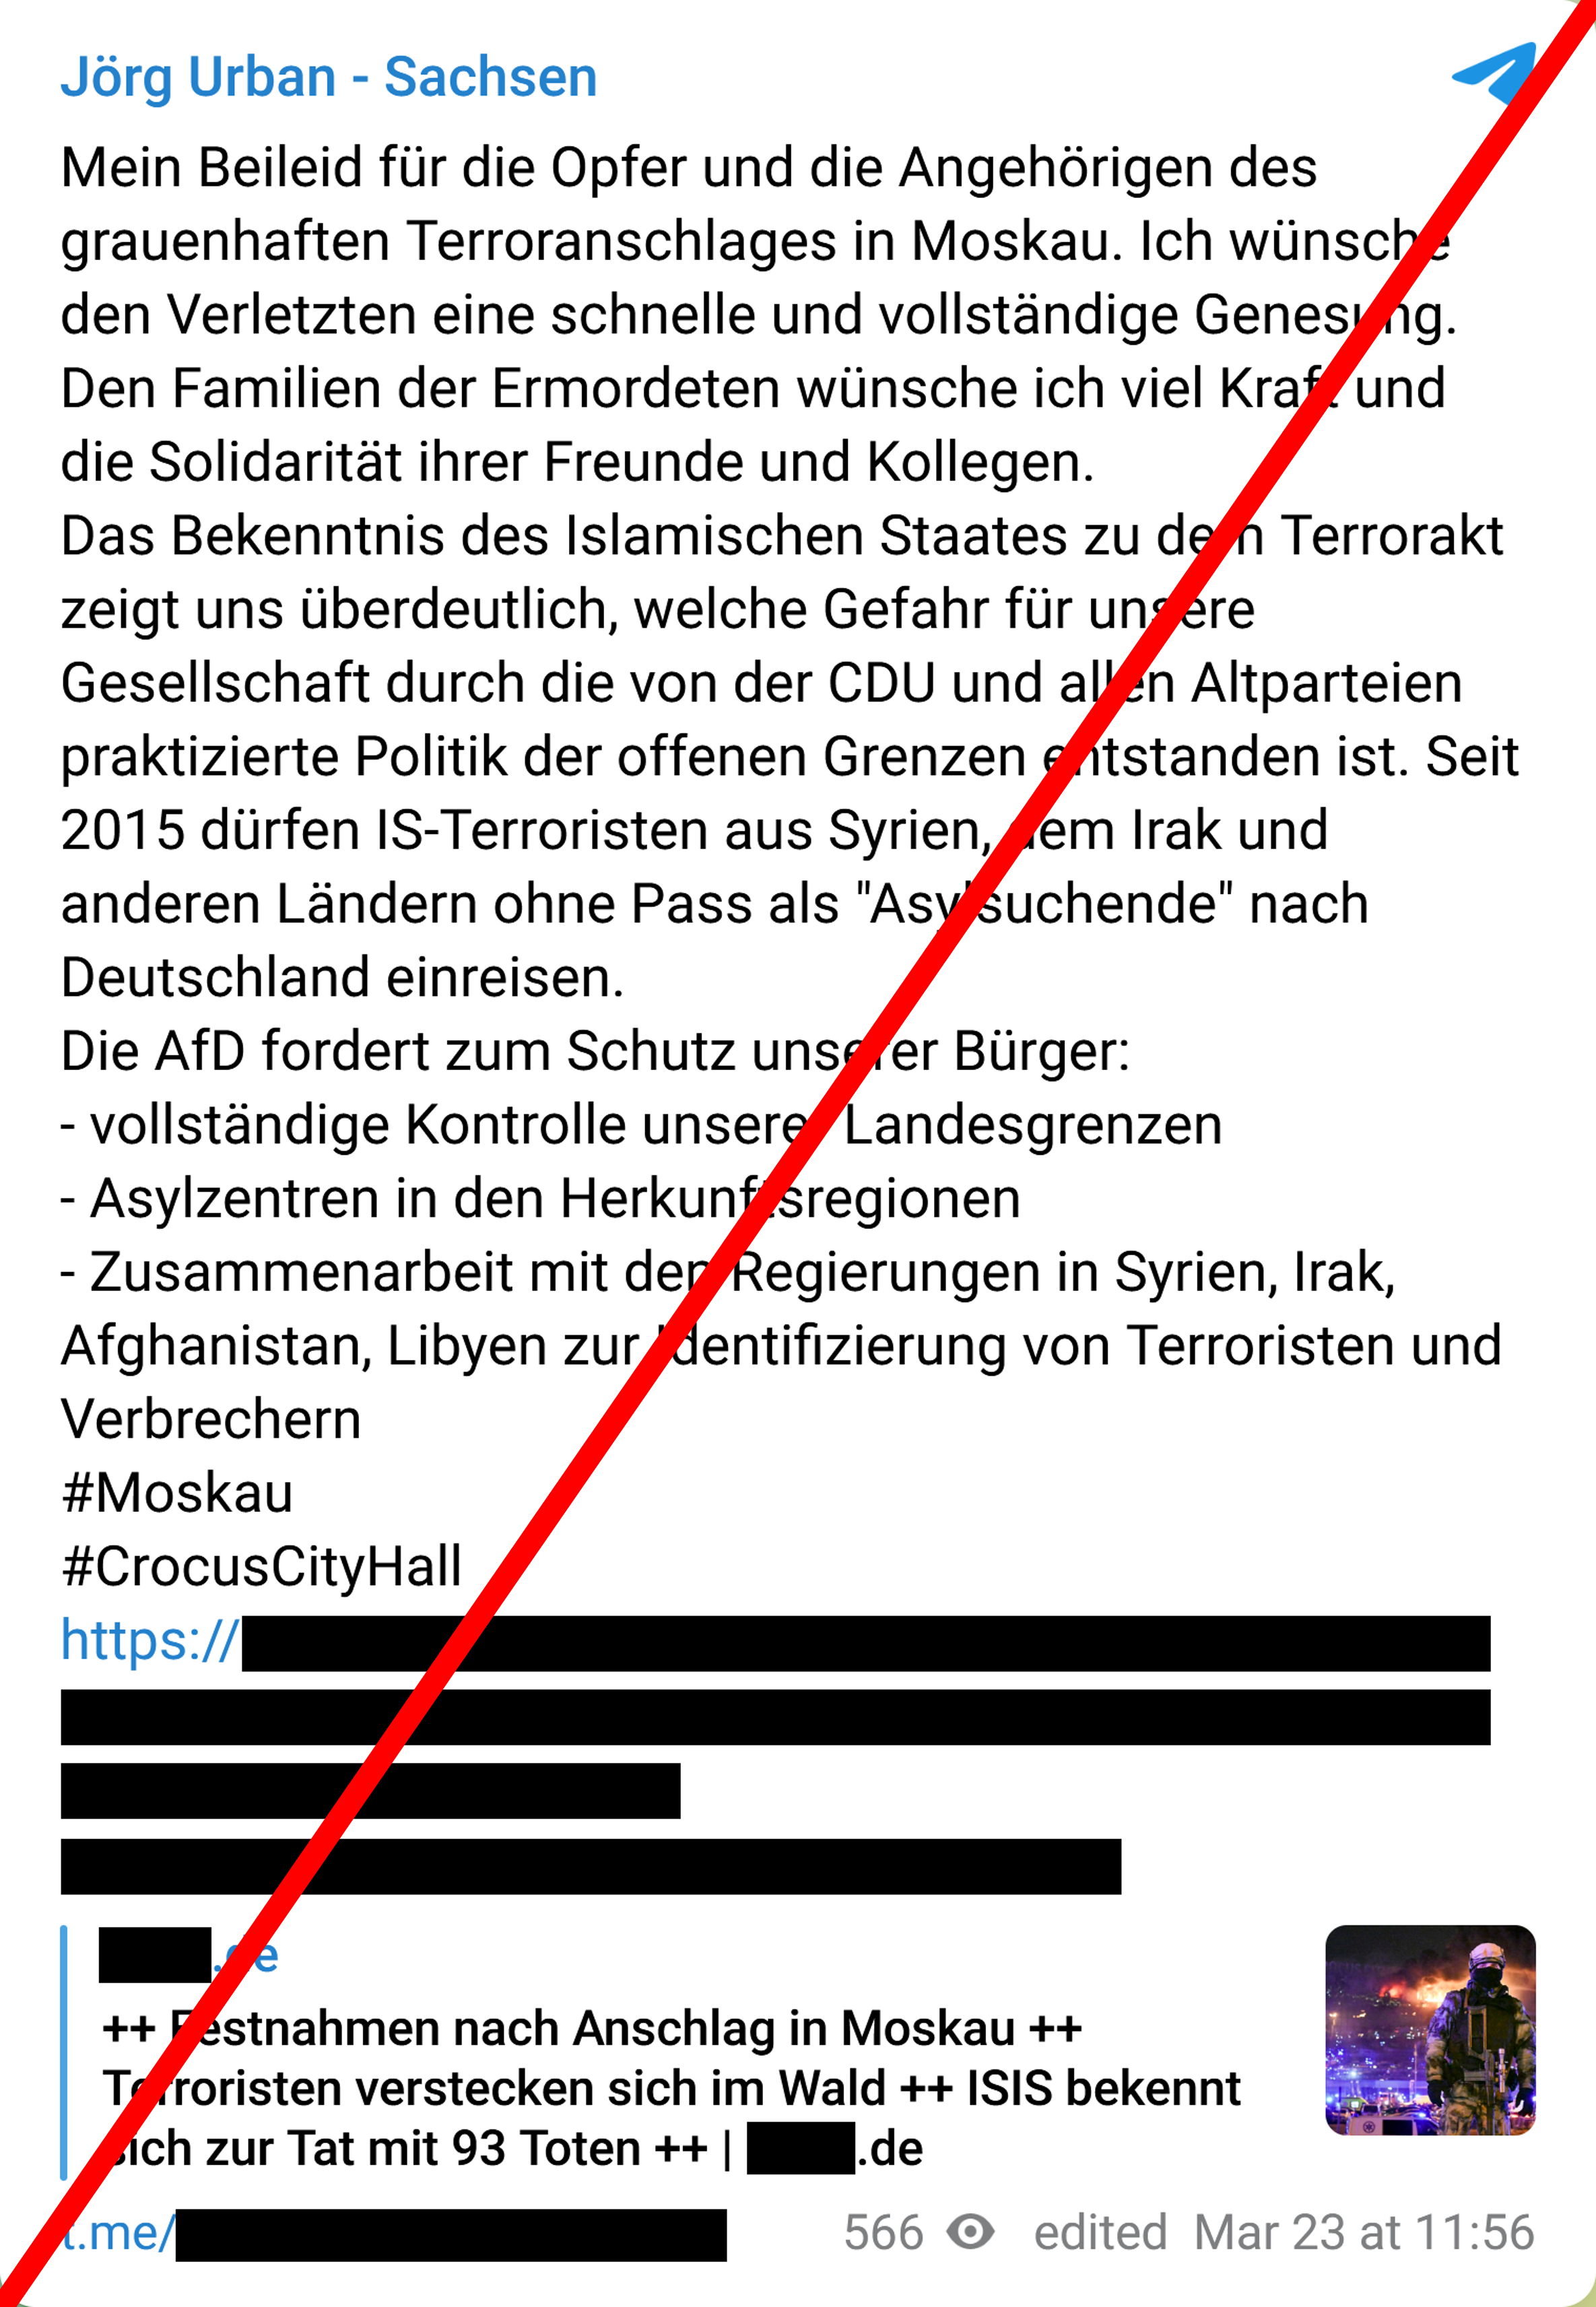 Screenshot aus Telegram: 'Jörg Urban - Sachsen' mit einem Post zu dem Terroranschlag in Moskau